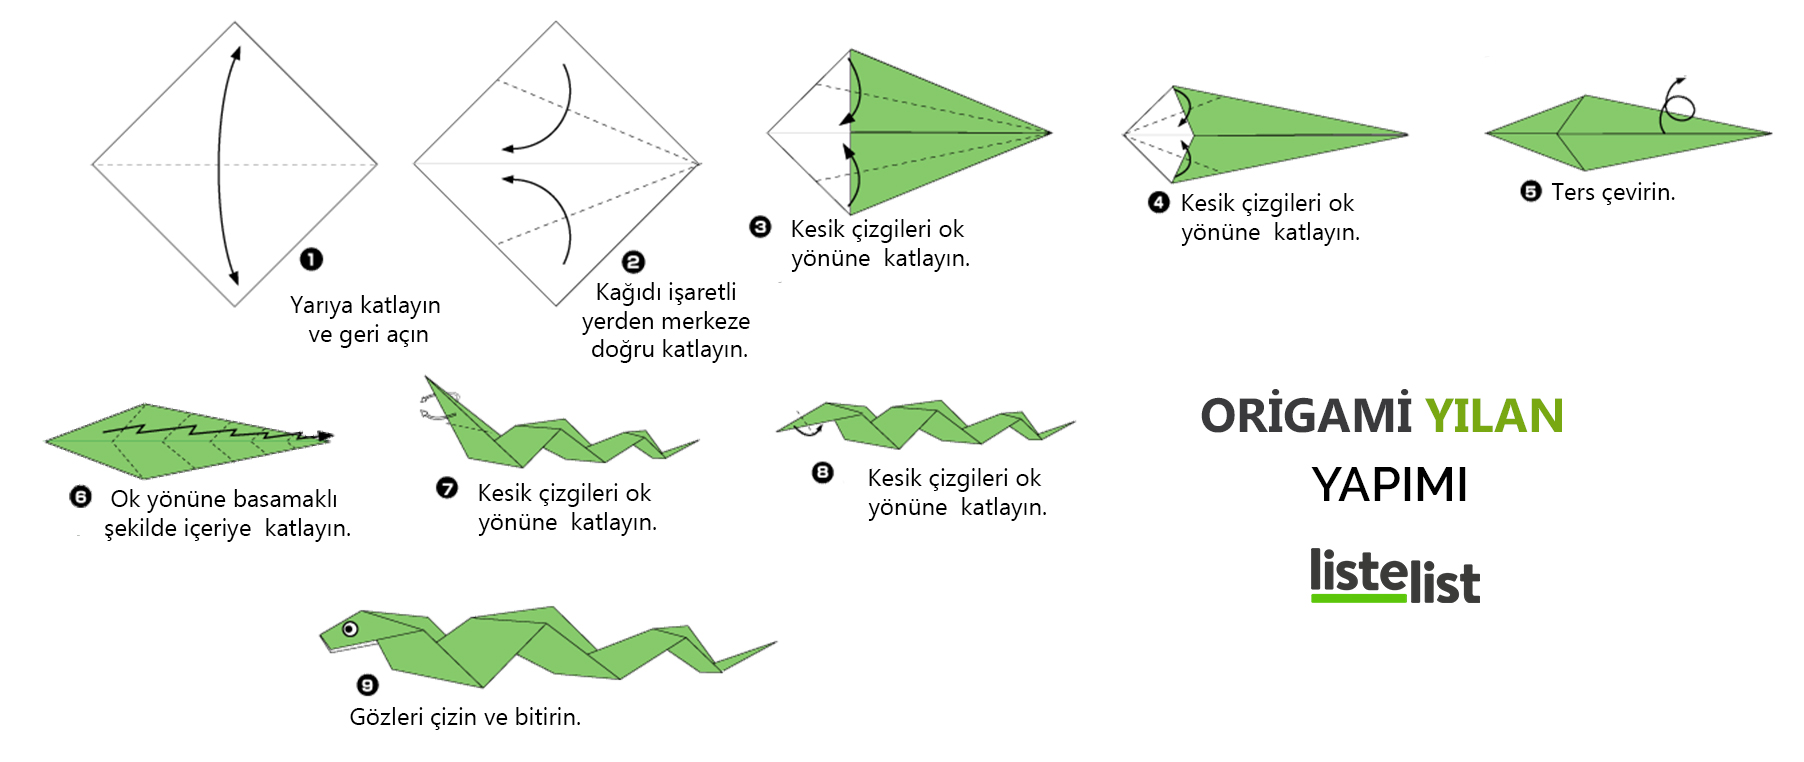 origami kağıt katlama sanatı